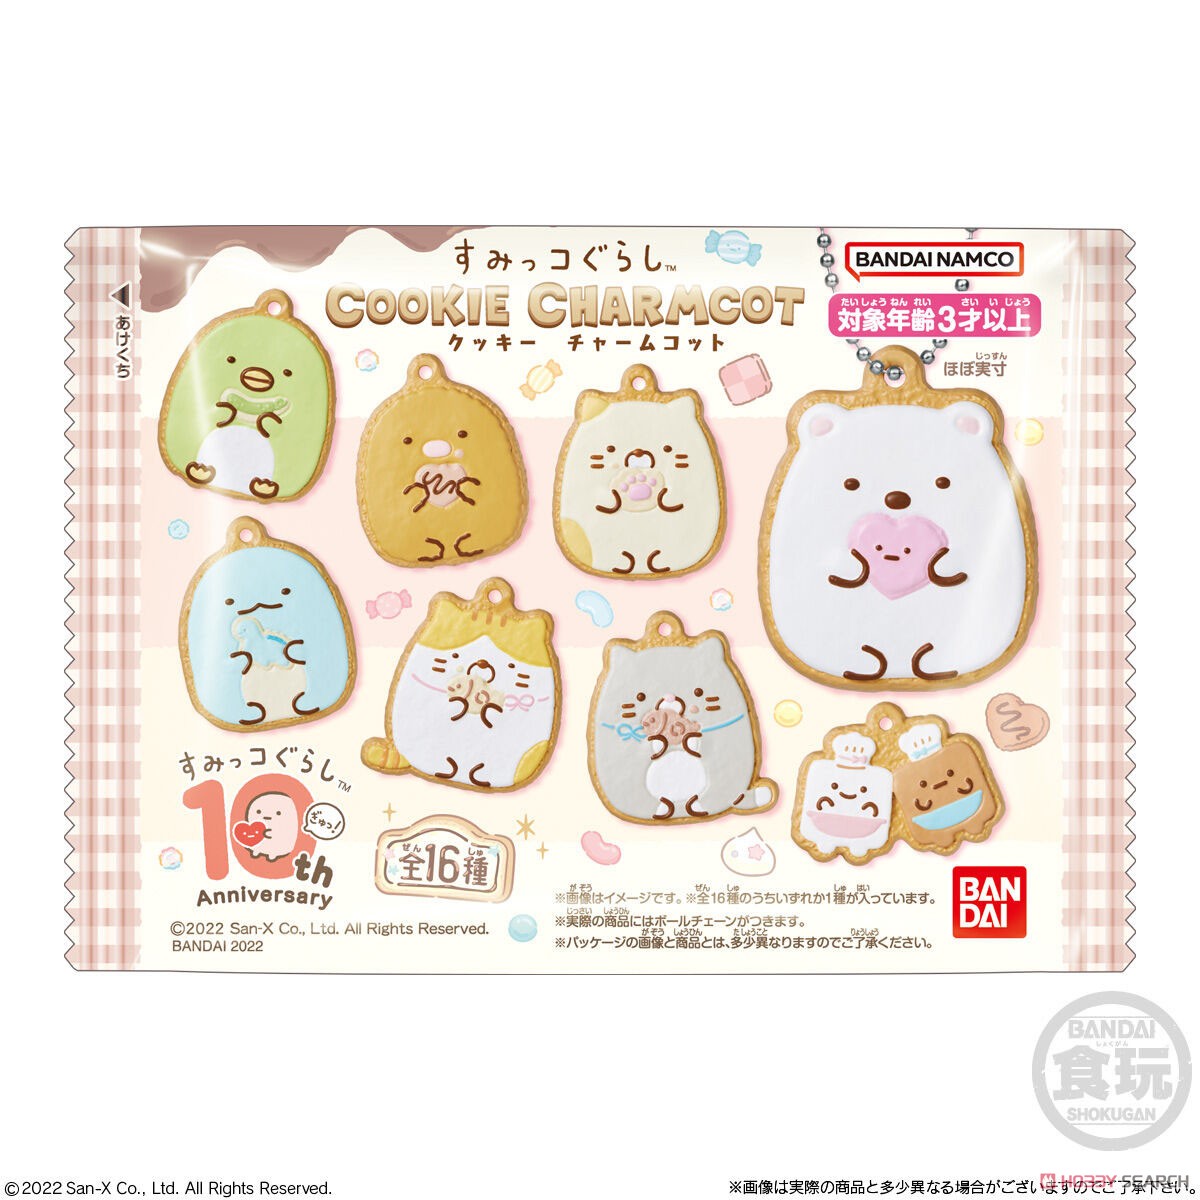 Sumikko Gurashi Cookie Charmcot (Set of 14) (Shokugan) Package1